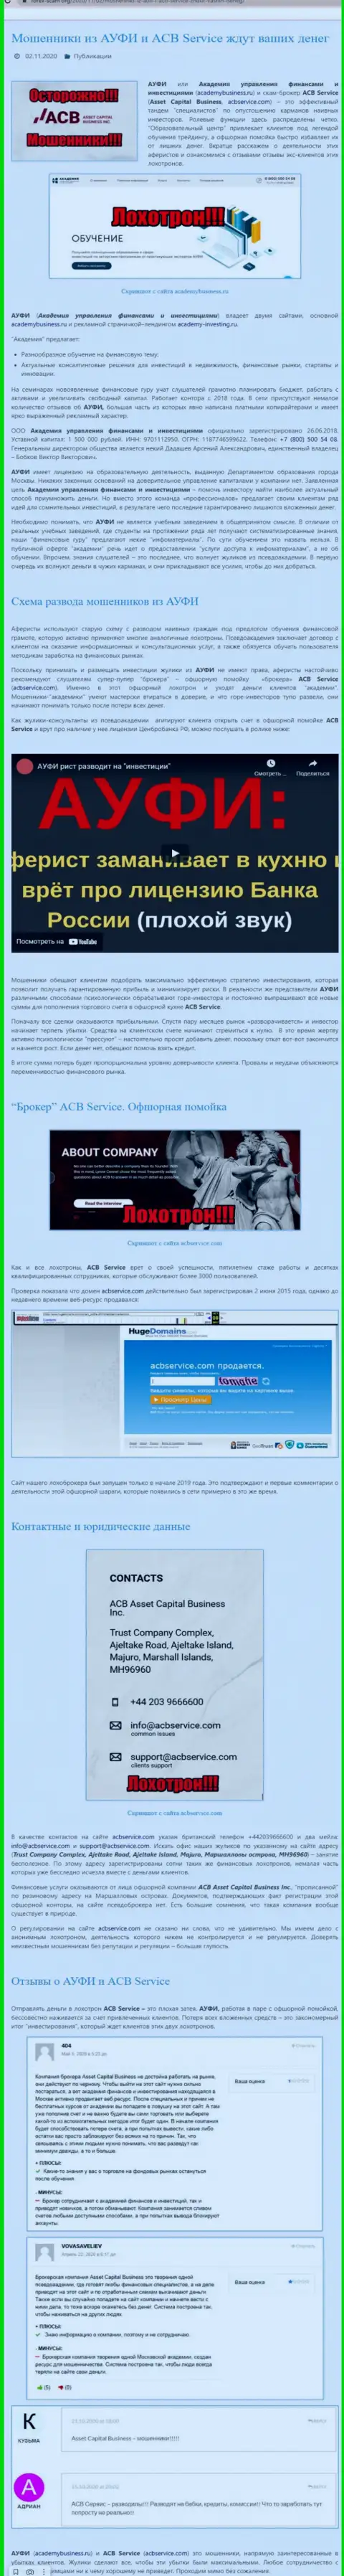 AcademyBusiness Ru - это МАХИНАТОРЫ и АФЕРИСТЫ ! Надувают и крадут финансовые активы (обзор мошеннических деяний)